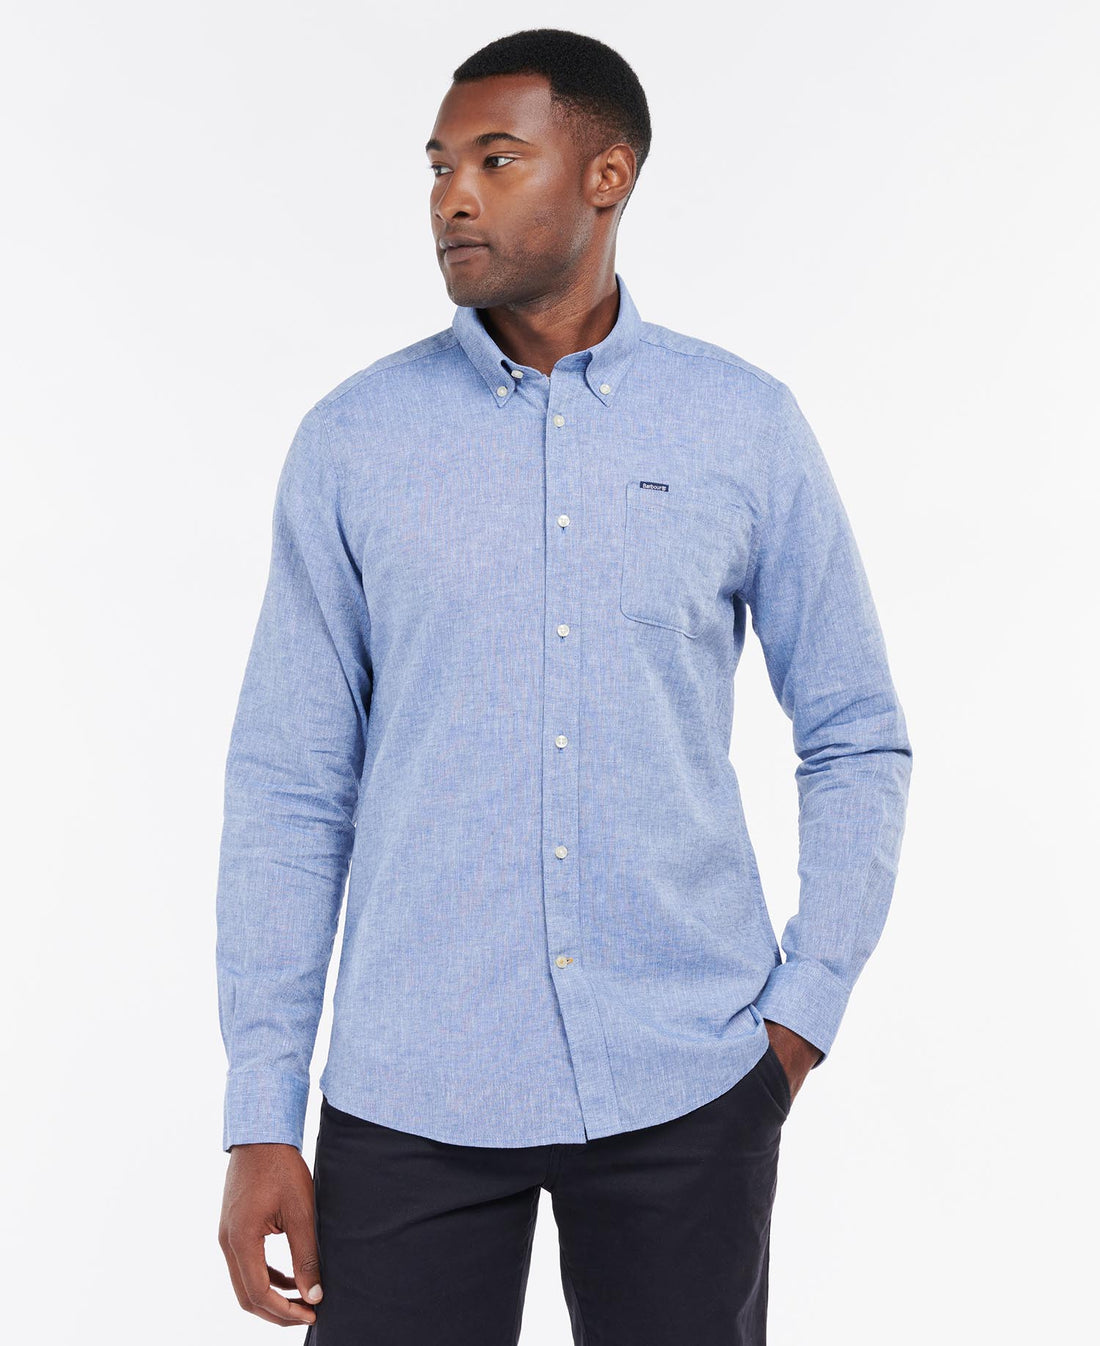 Nelson Tailored Shirt - Blue